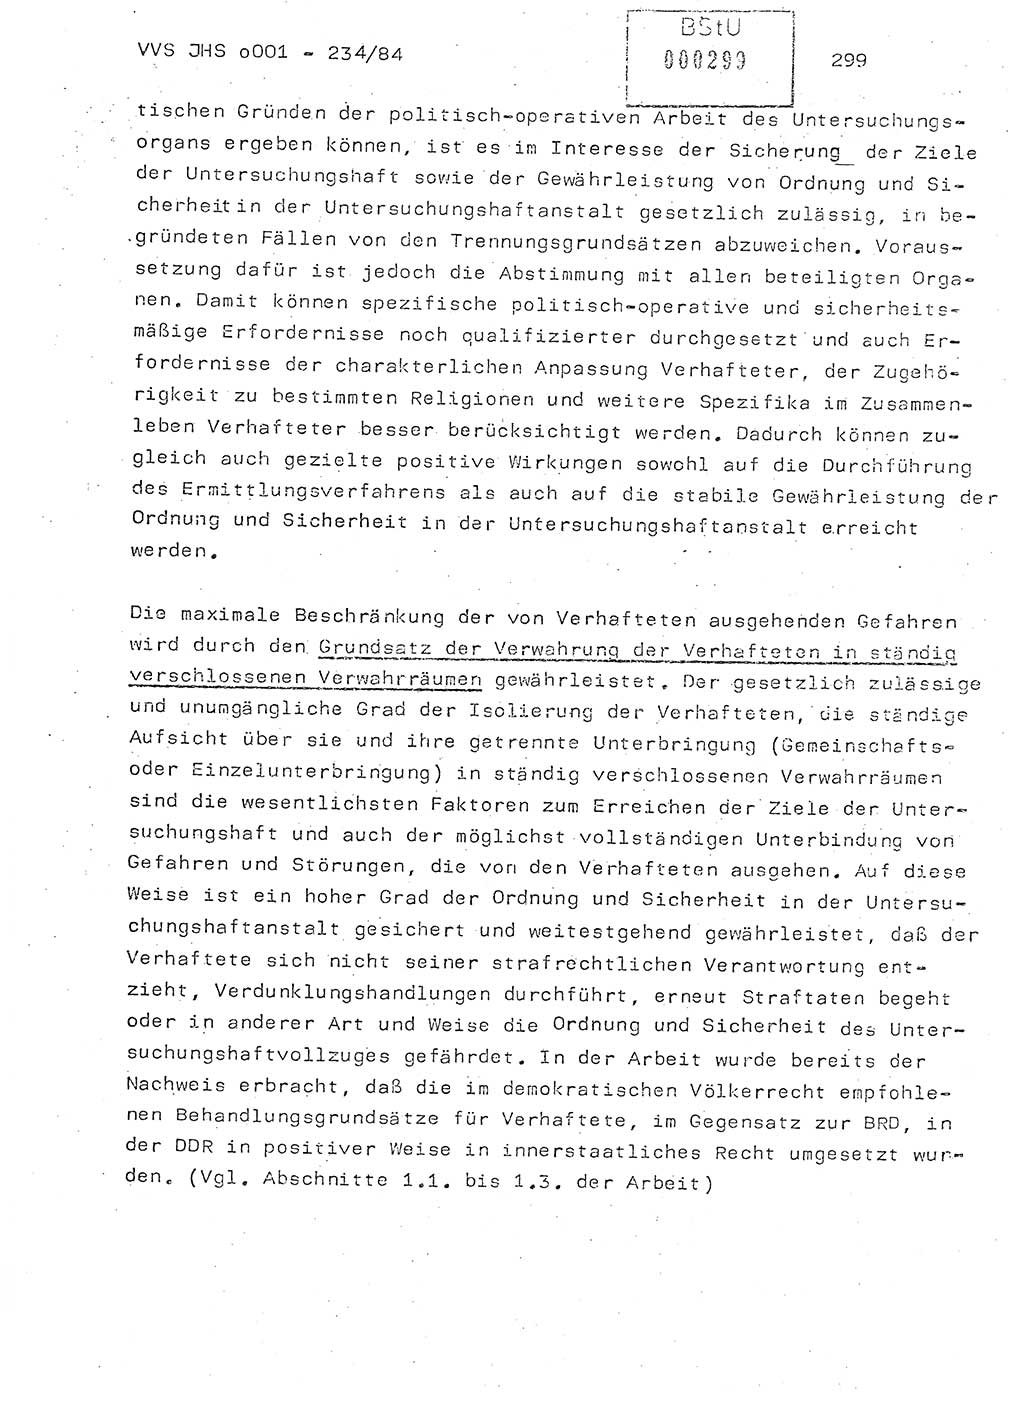 Dissertation Oberst Siegfried Rataizick (Abt. ⅩⅣ), Oberstleutnant Volkmar Heinz (Abt. ⅩⅣ), Oberstleutnant Werner Stein (HA Ⅸ), Hauptmann Heinz Conrad (JHS), Ministerium für Staatssicherheit (MfS) [Deutsche Demokratische Republik (DDR)], Juristische Hochschule (JHS), Vertrauliche Verschlußsache (VVS) o001-234/84, Potsdam 1984, Seite 299 (Diss. MfS DDR JHS VVS o001-234/84 1984, S. 299)